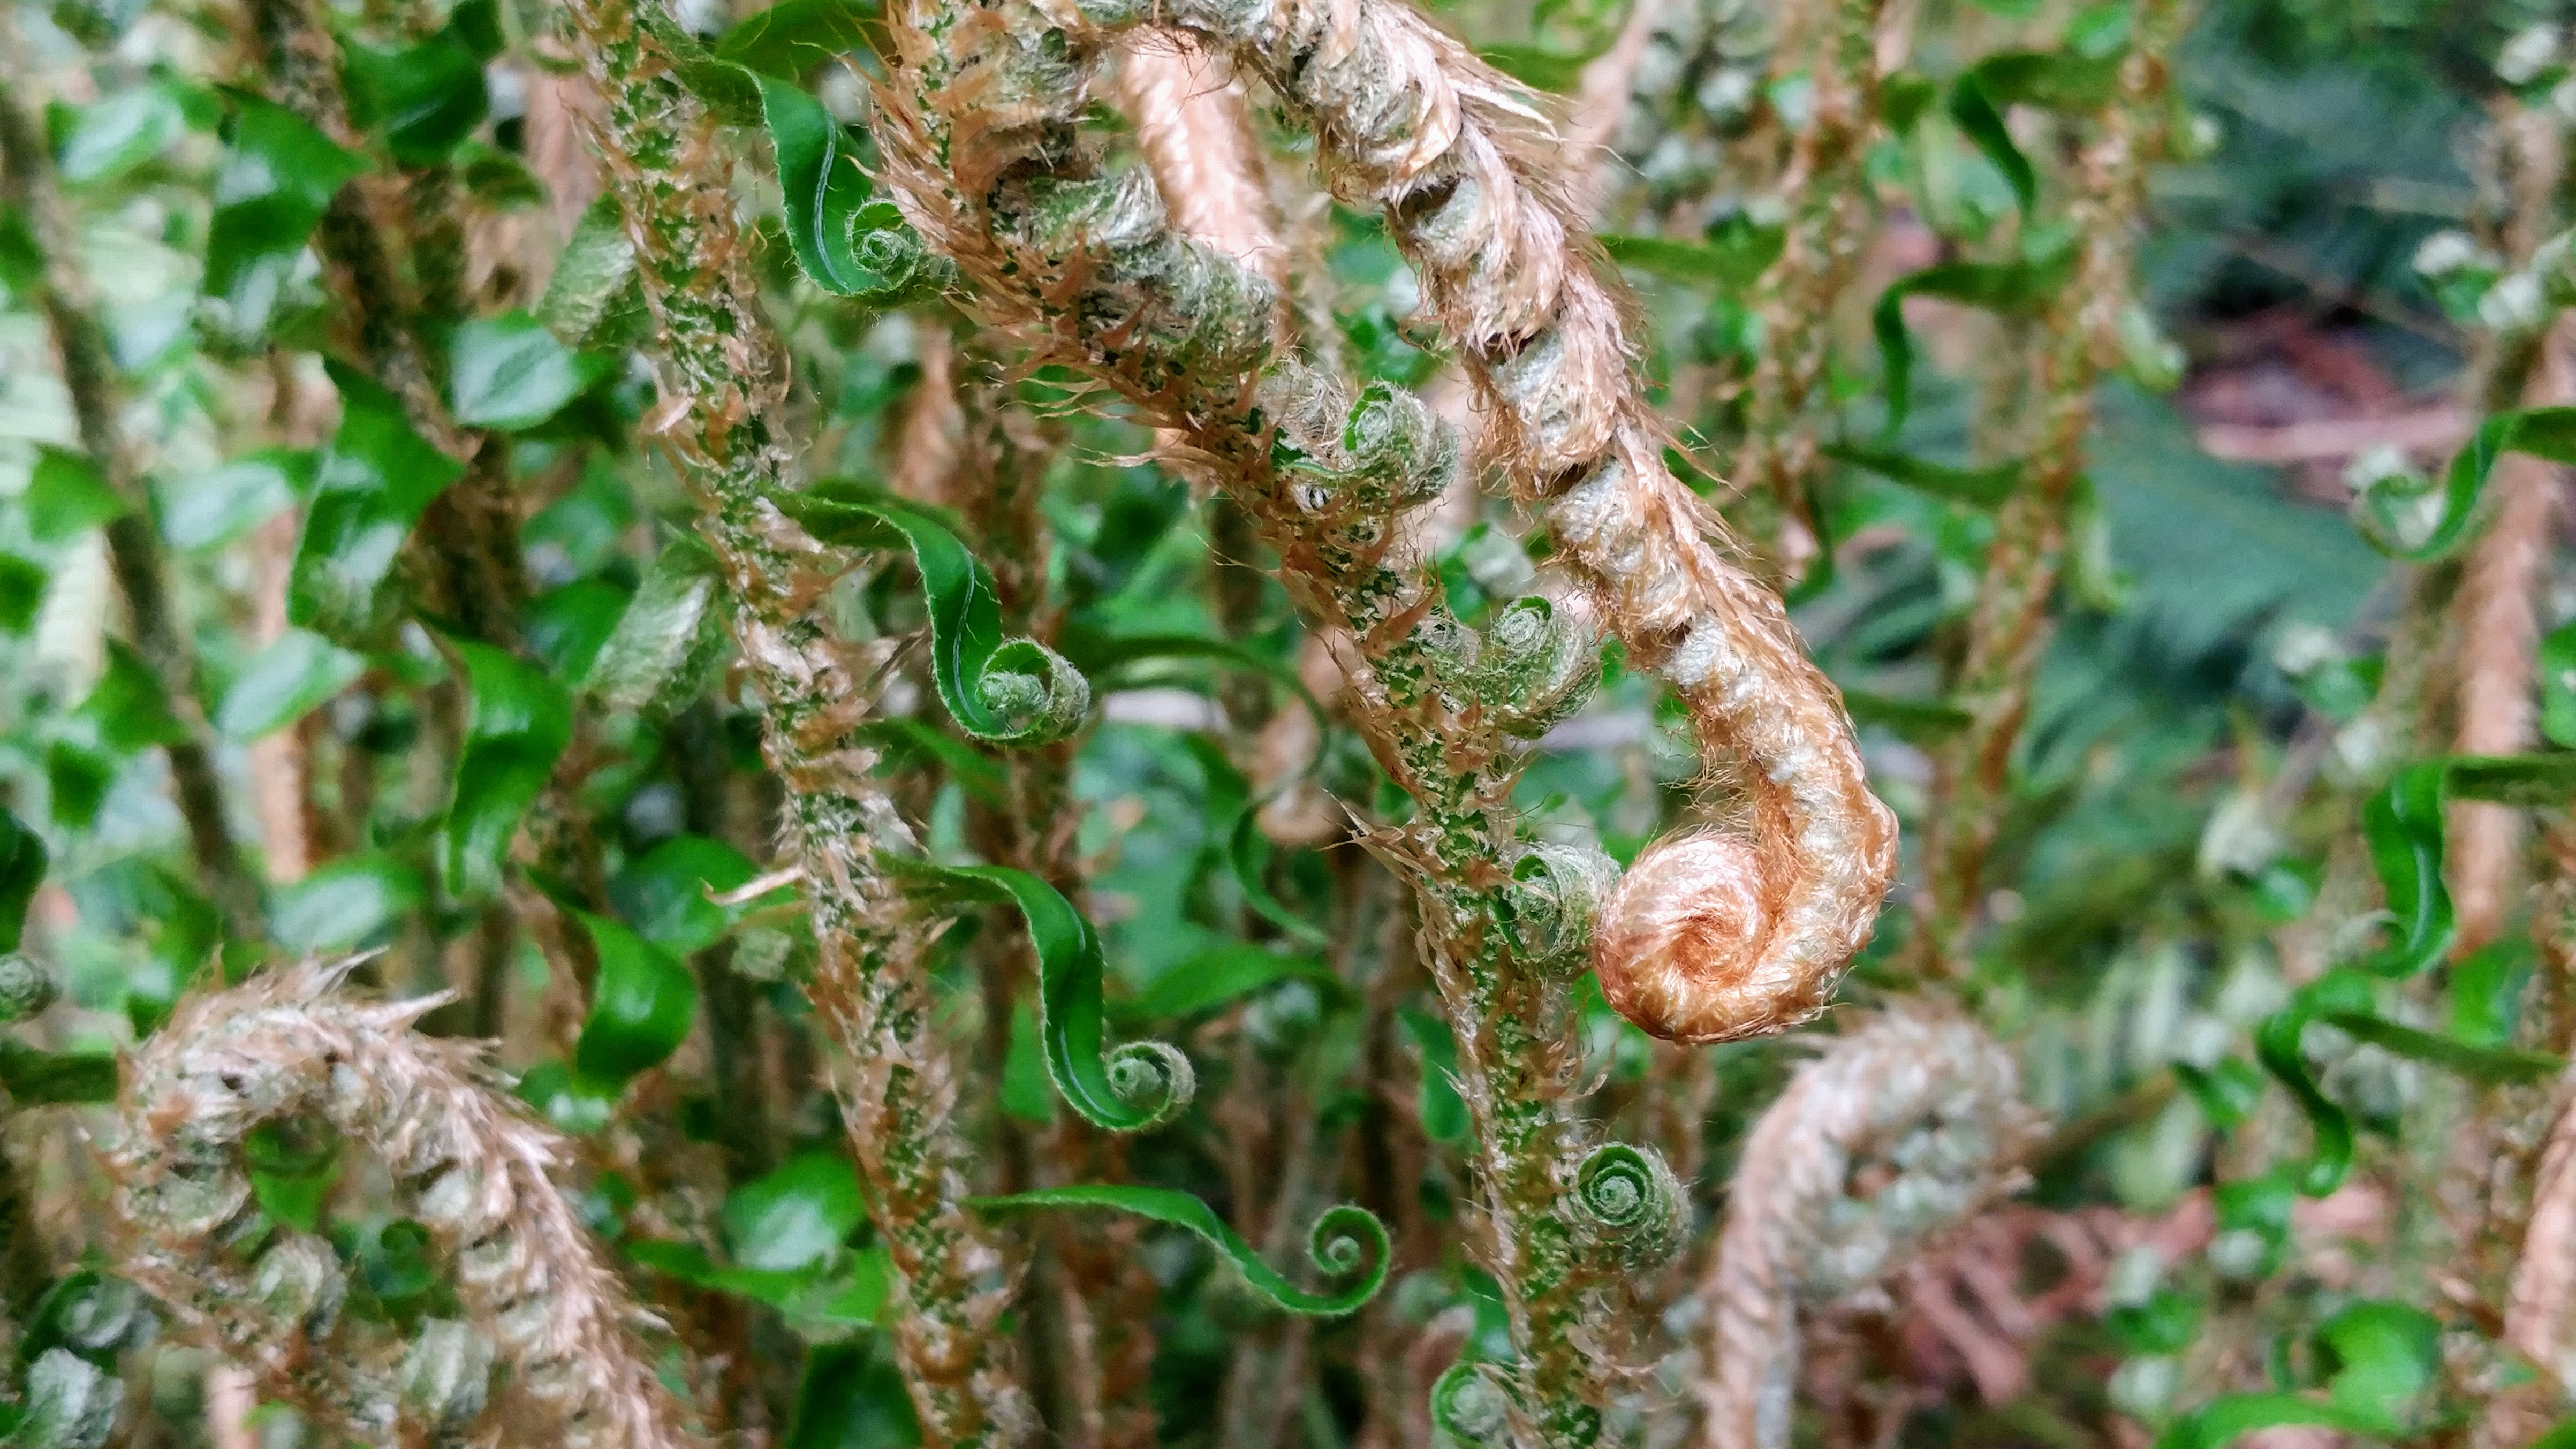 Spirals in ferns in Vancouver, BC â€“ https://www.kimwerker.com/blog